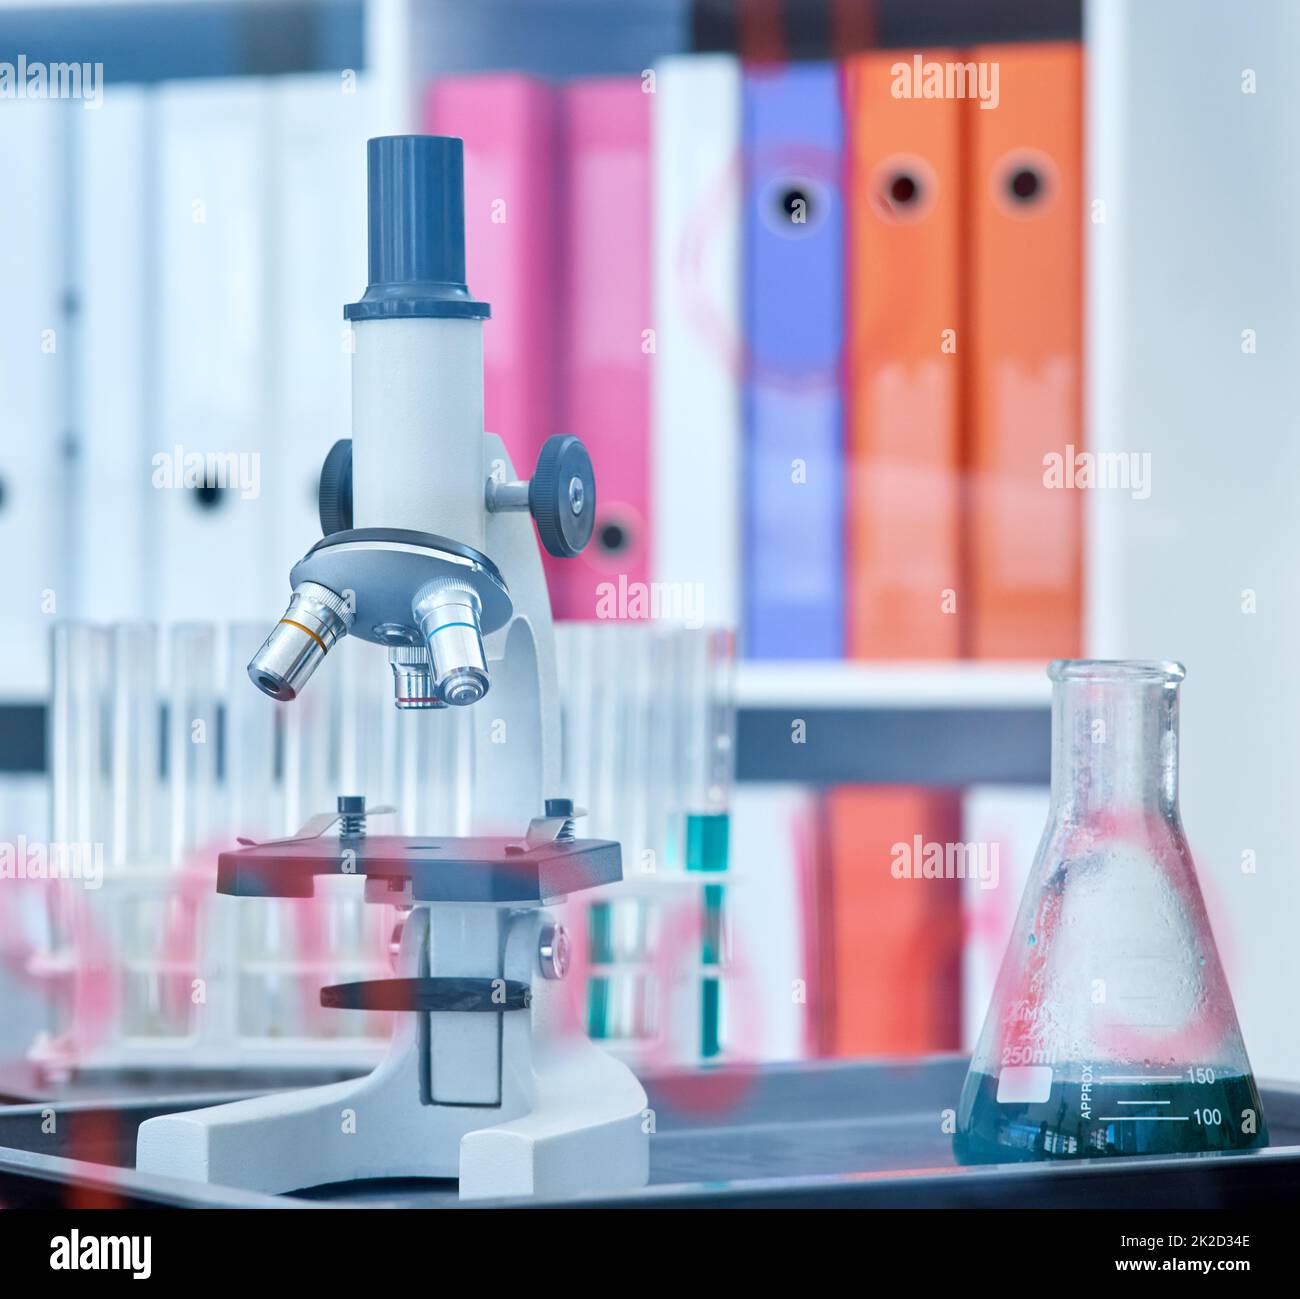 Chaque expérience favorise la découverte et l'apprentissage. Gros plan d'un microscope et d'un bécher dans un laboratoire. Banque D'Images